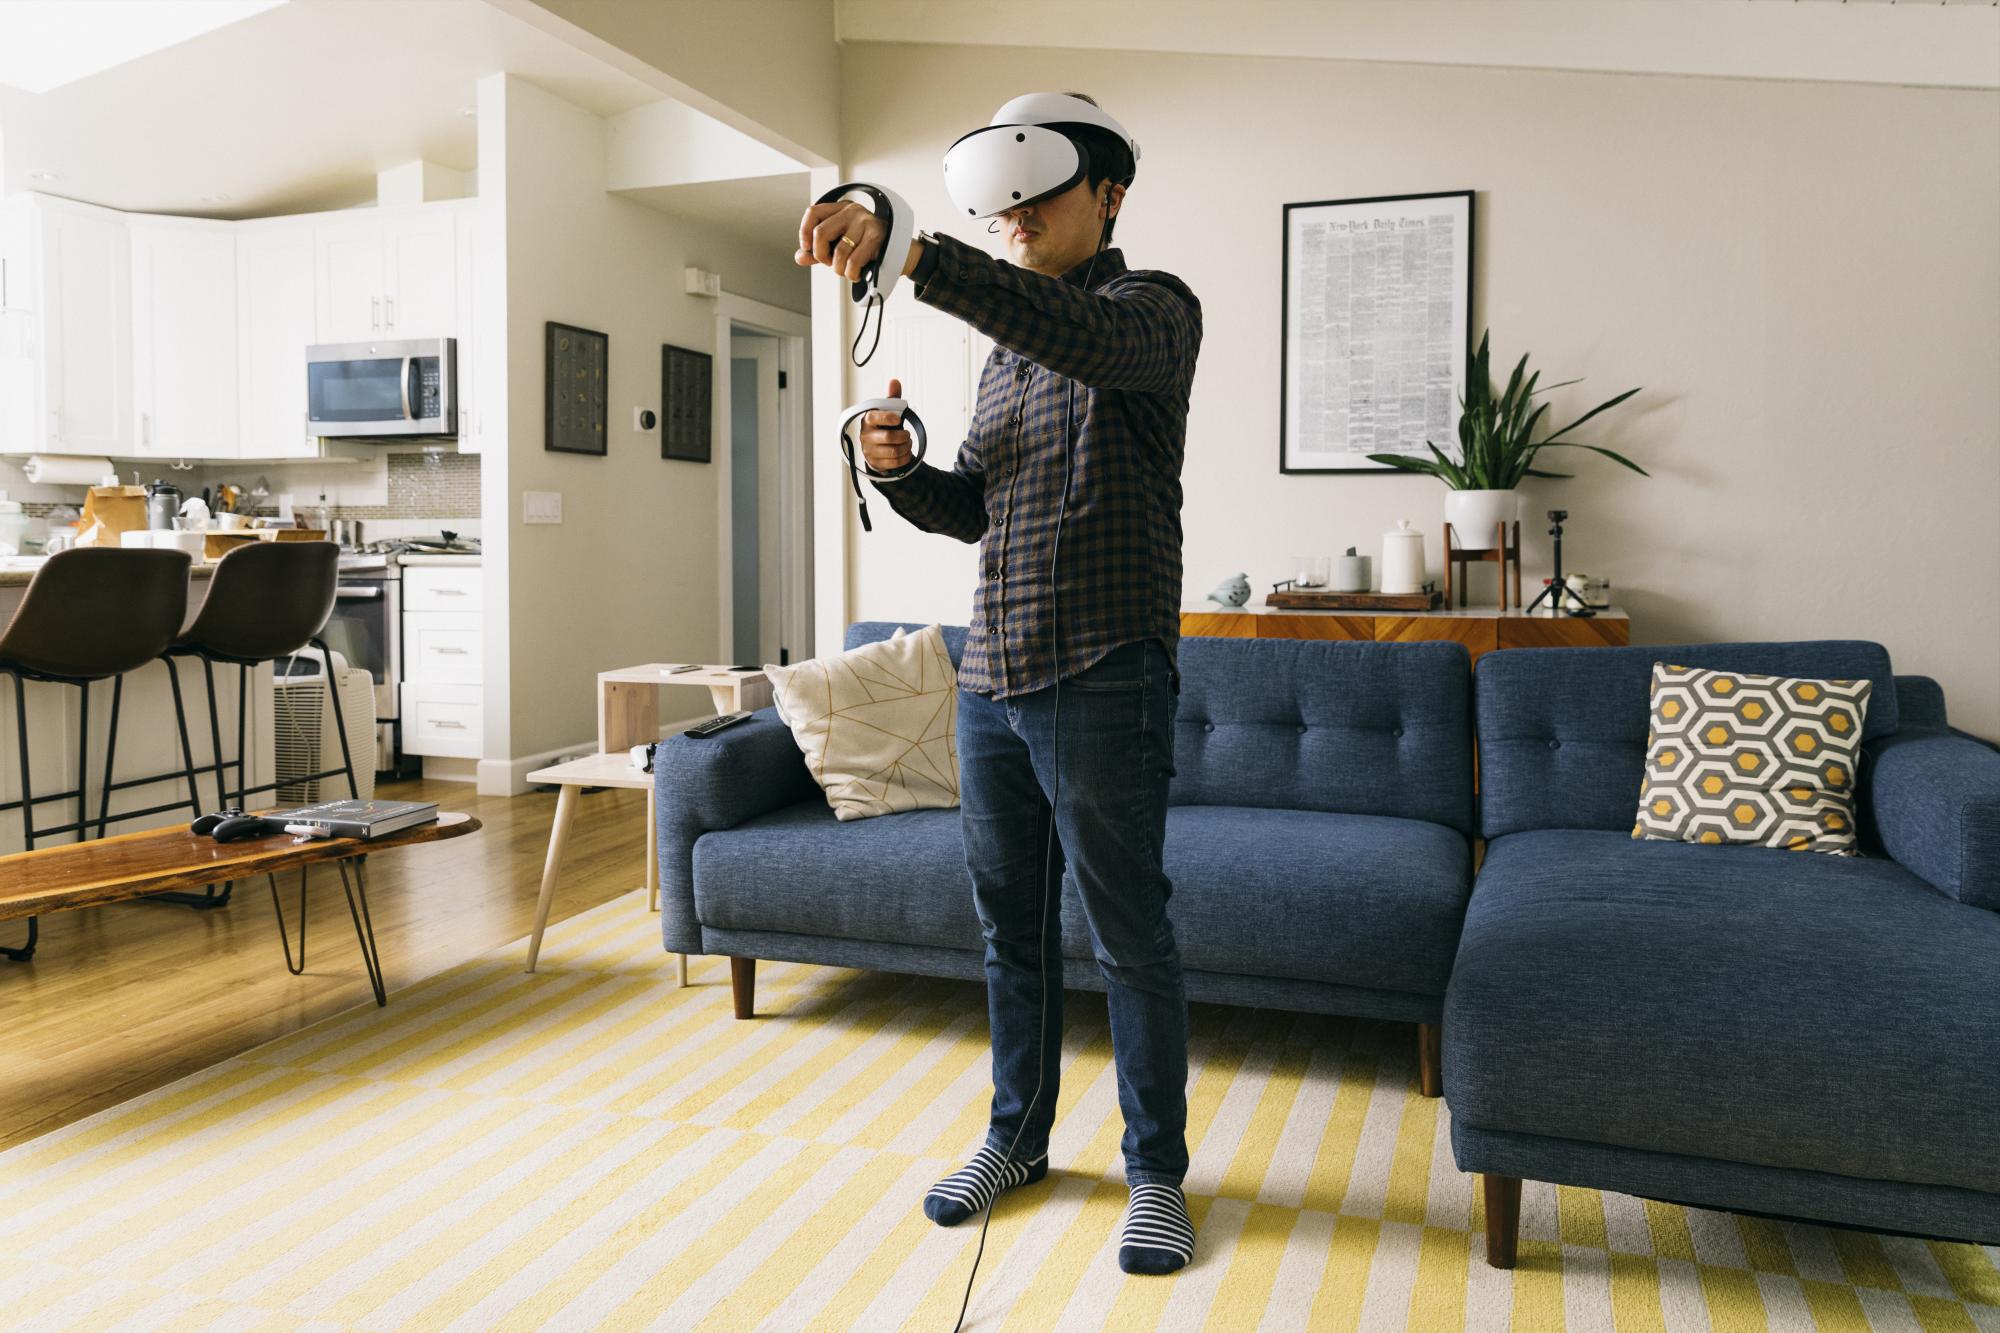 $!Algunas empresas han apostado a la realidad virtual con los videojuegos, tal es el caso de Playstation VR de Sony | Foto: The New York Times